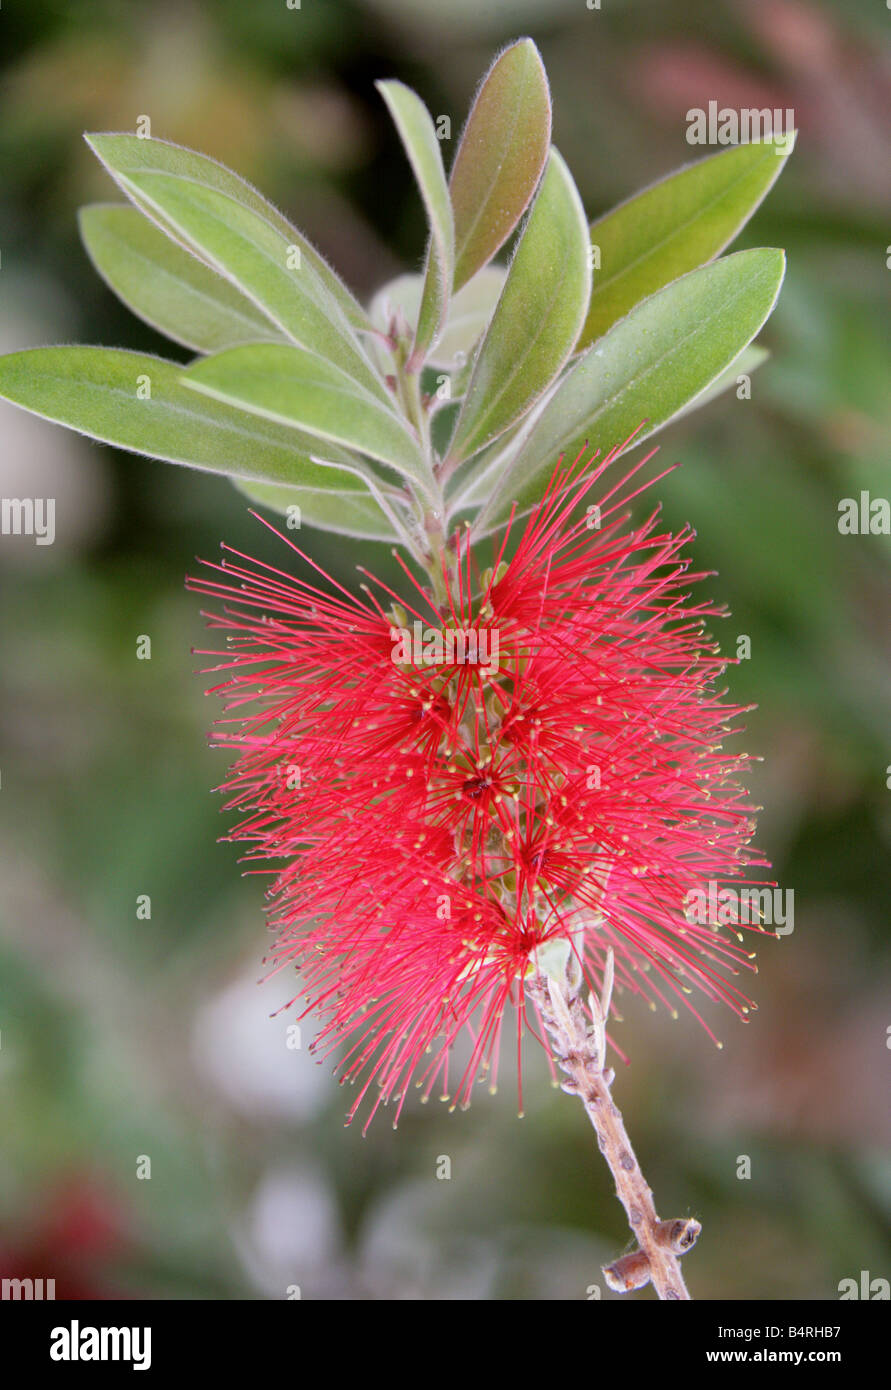 Crymson Bottlebrush, Callistemon citrinus var splendens, Myrtaceae, Australia Stock Photo